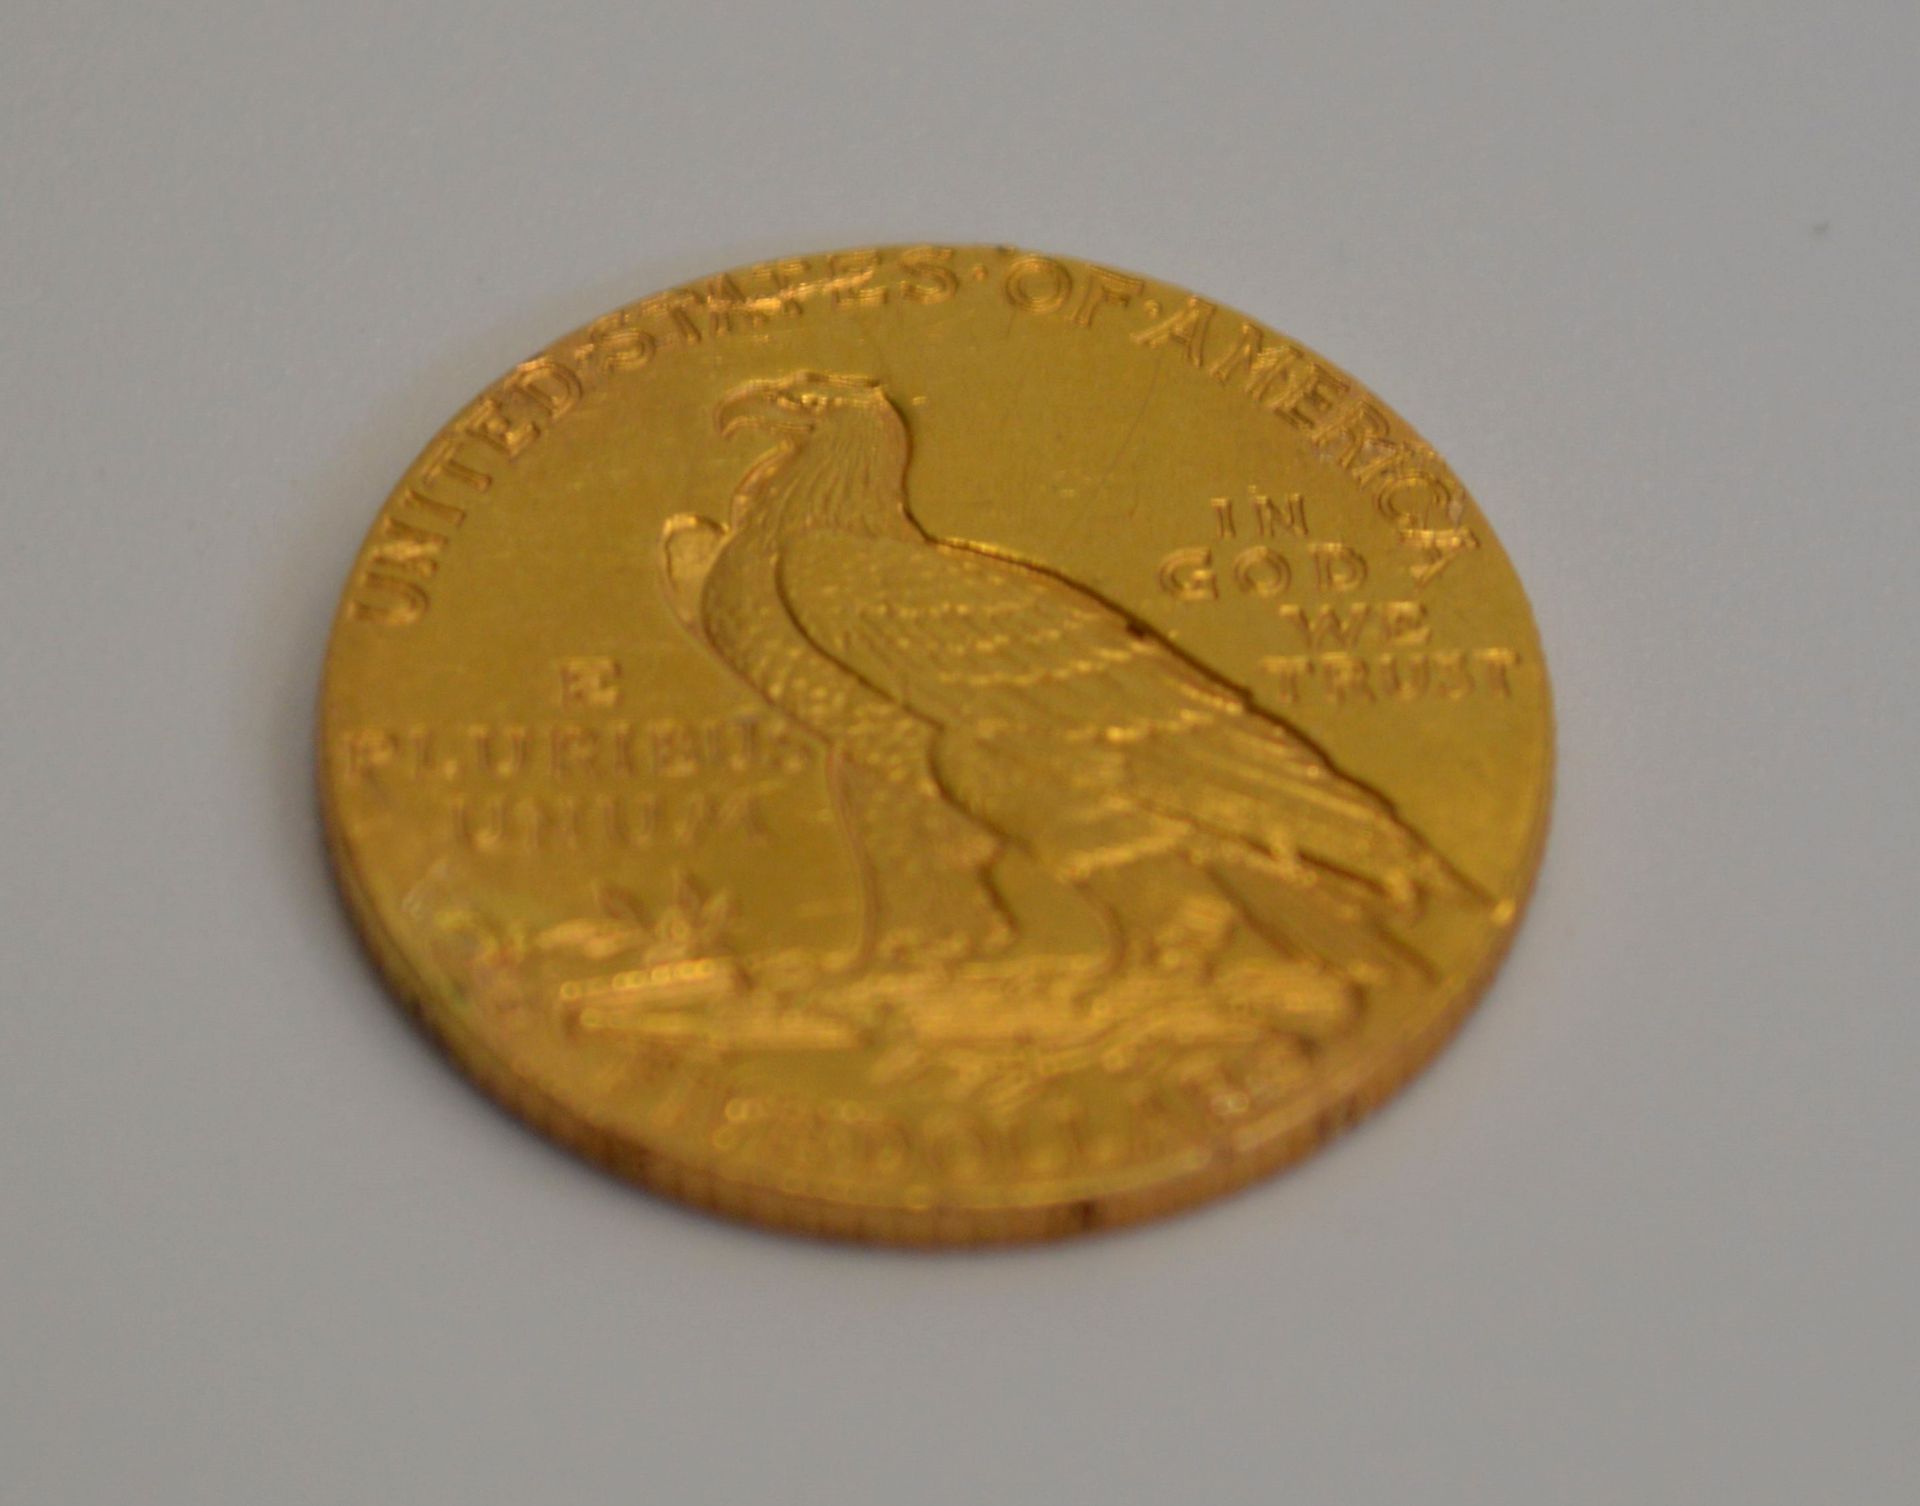 5-Dollar Goldmünze "Liberty" (United States of Amerika, 1909) - Image 3 of 3